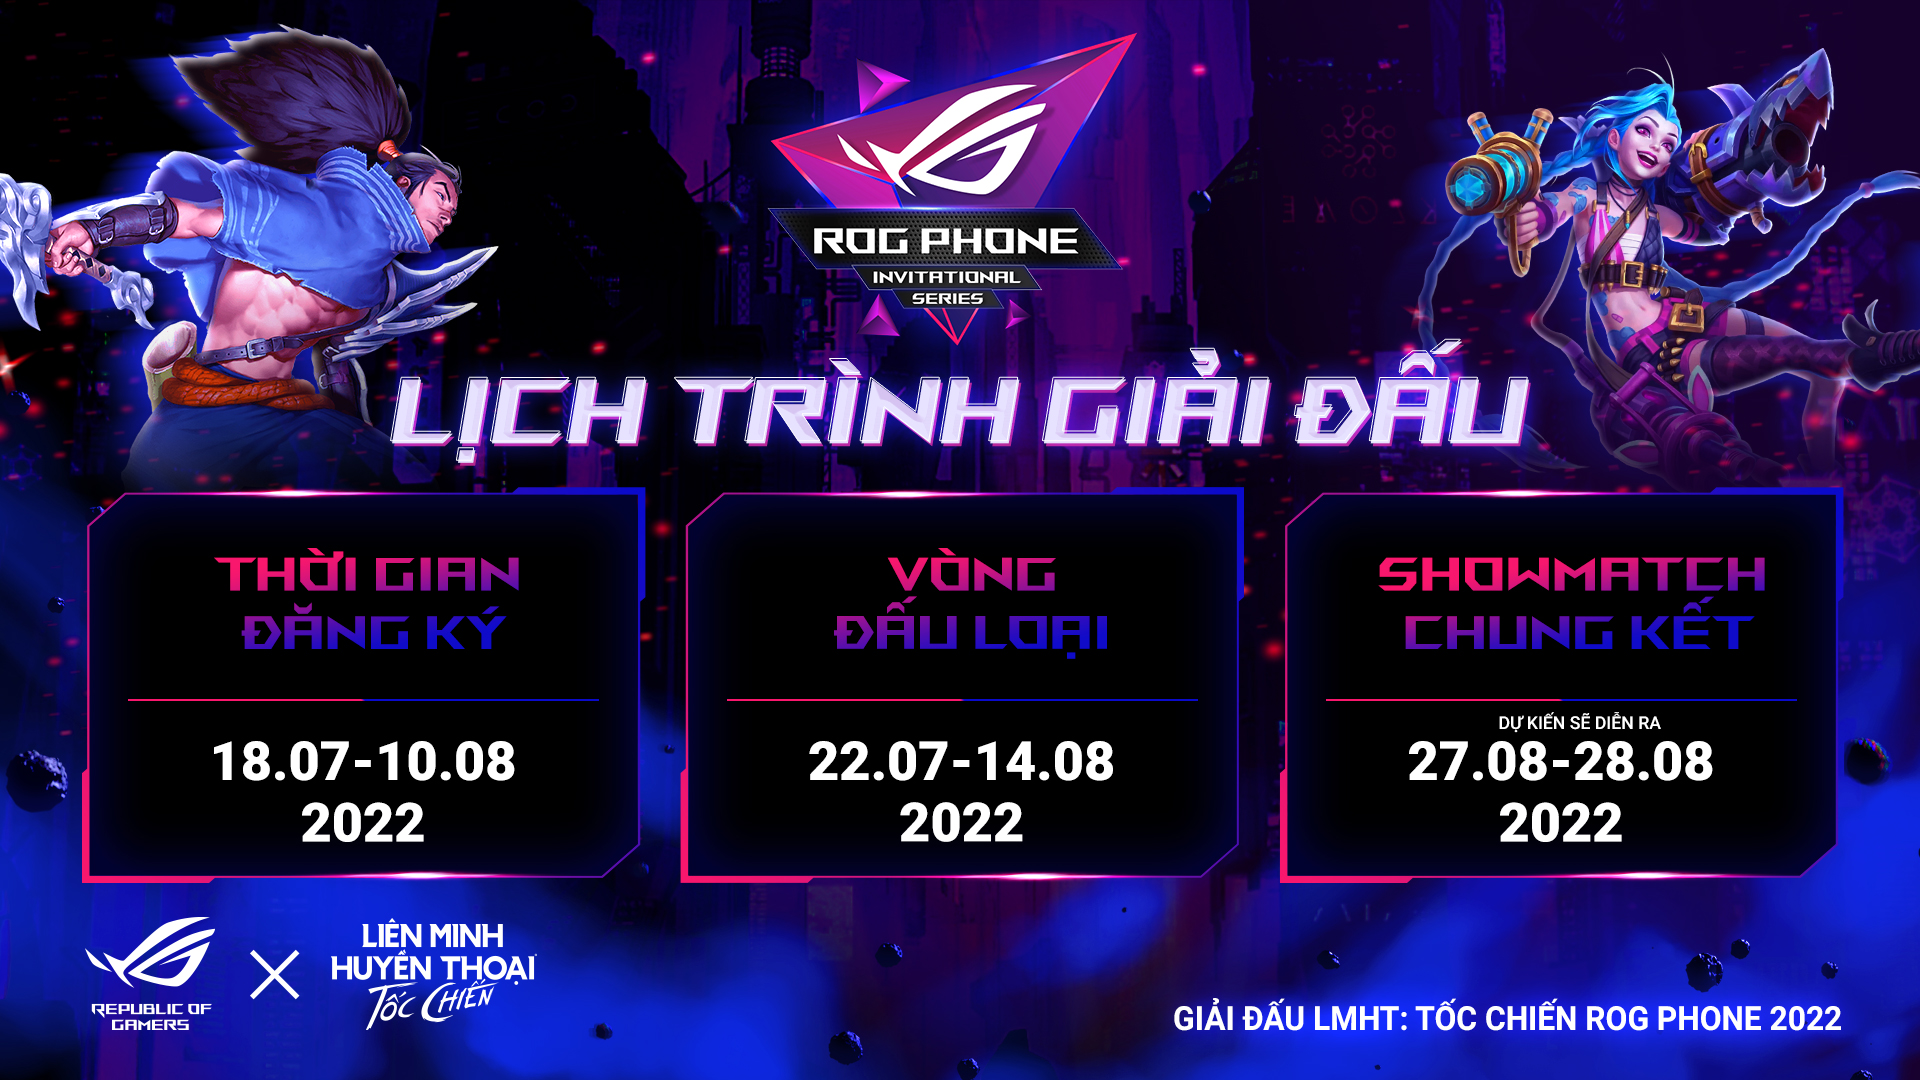 ASUS Republic of Gamers và VNG công bố giải đấu ROG Phone Invitational Series 2022 cho Tốc Chiến